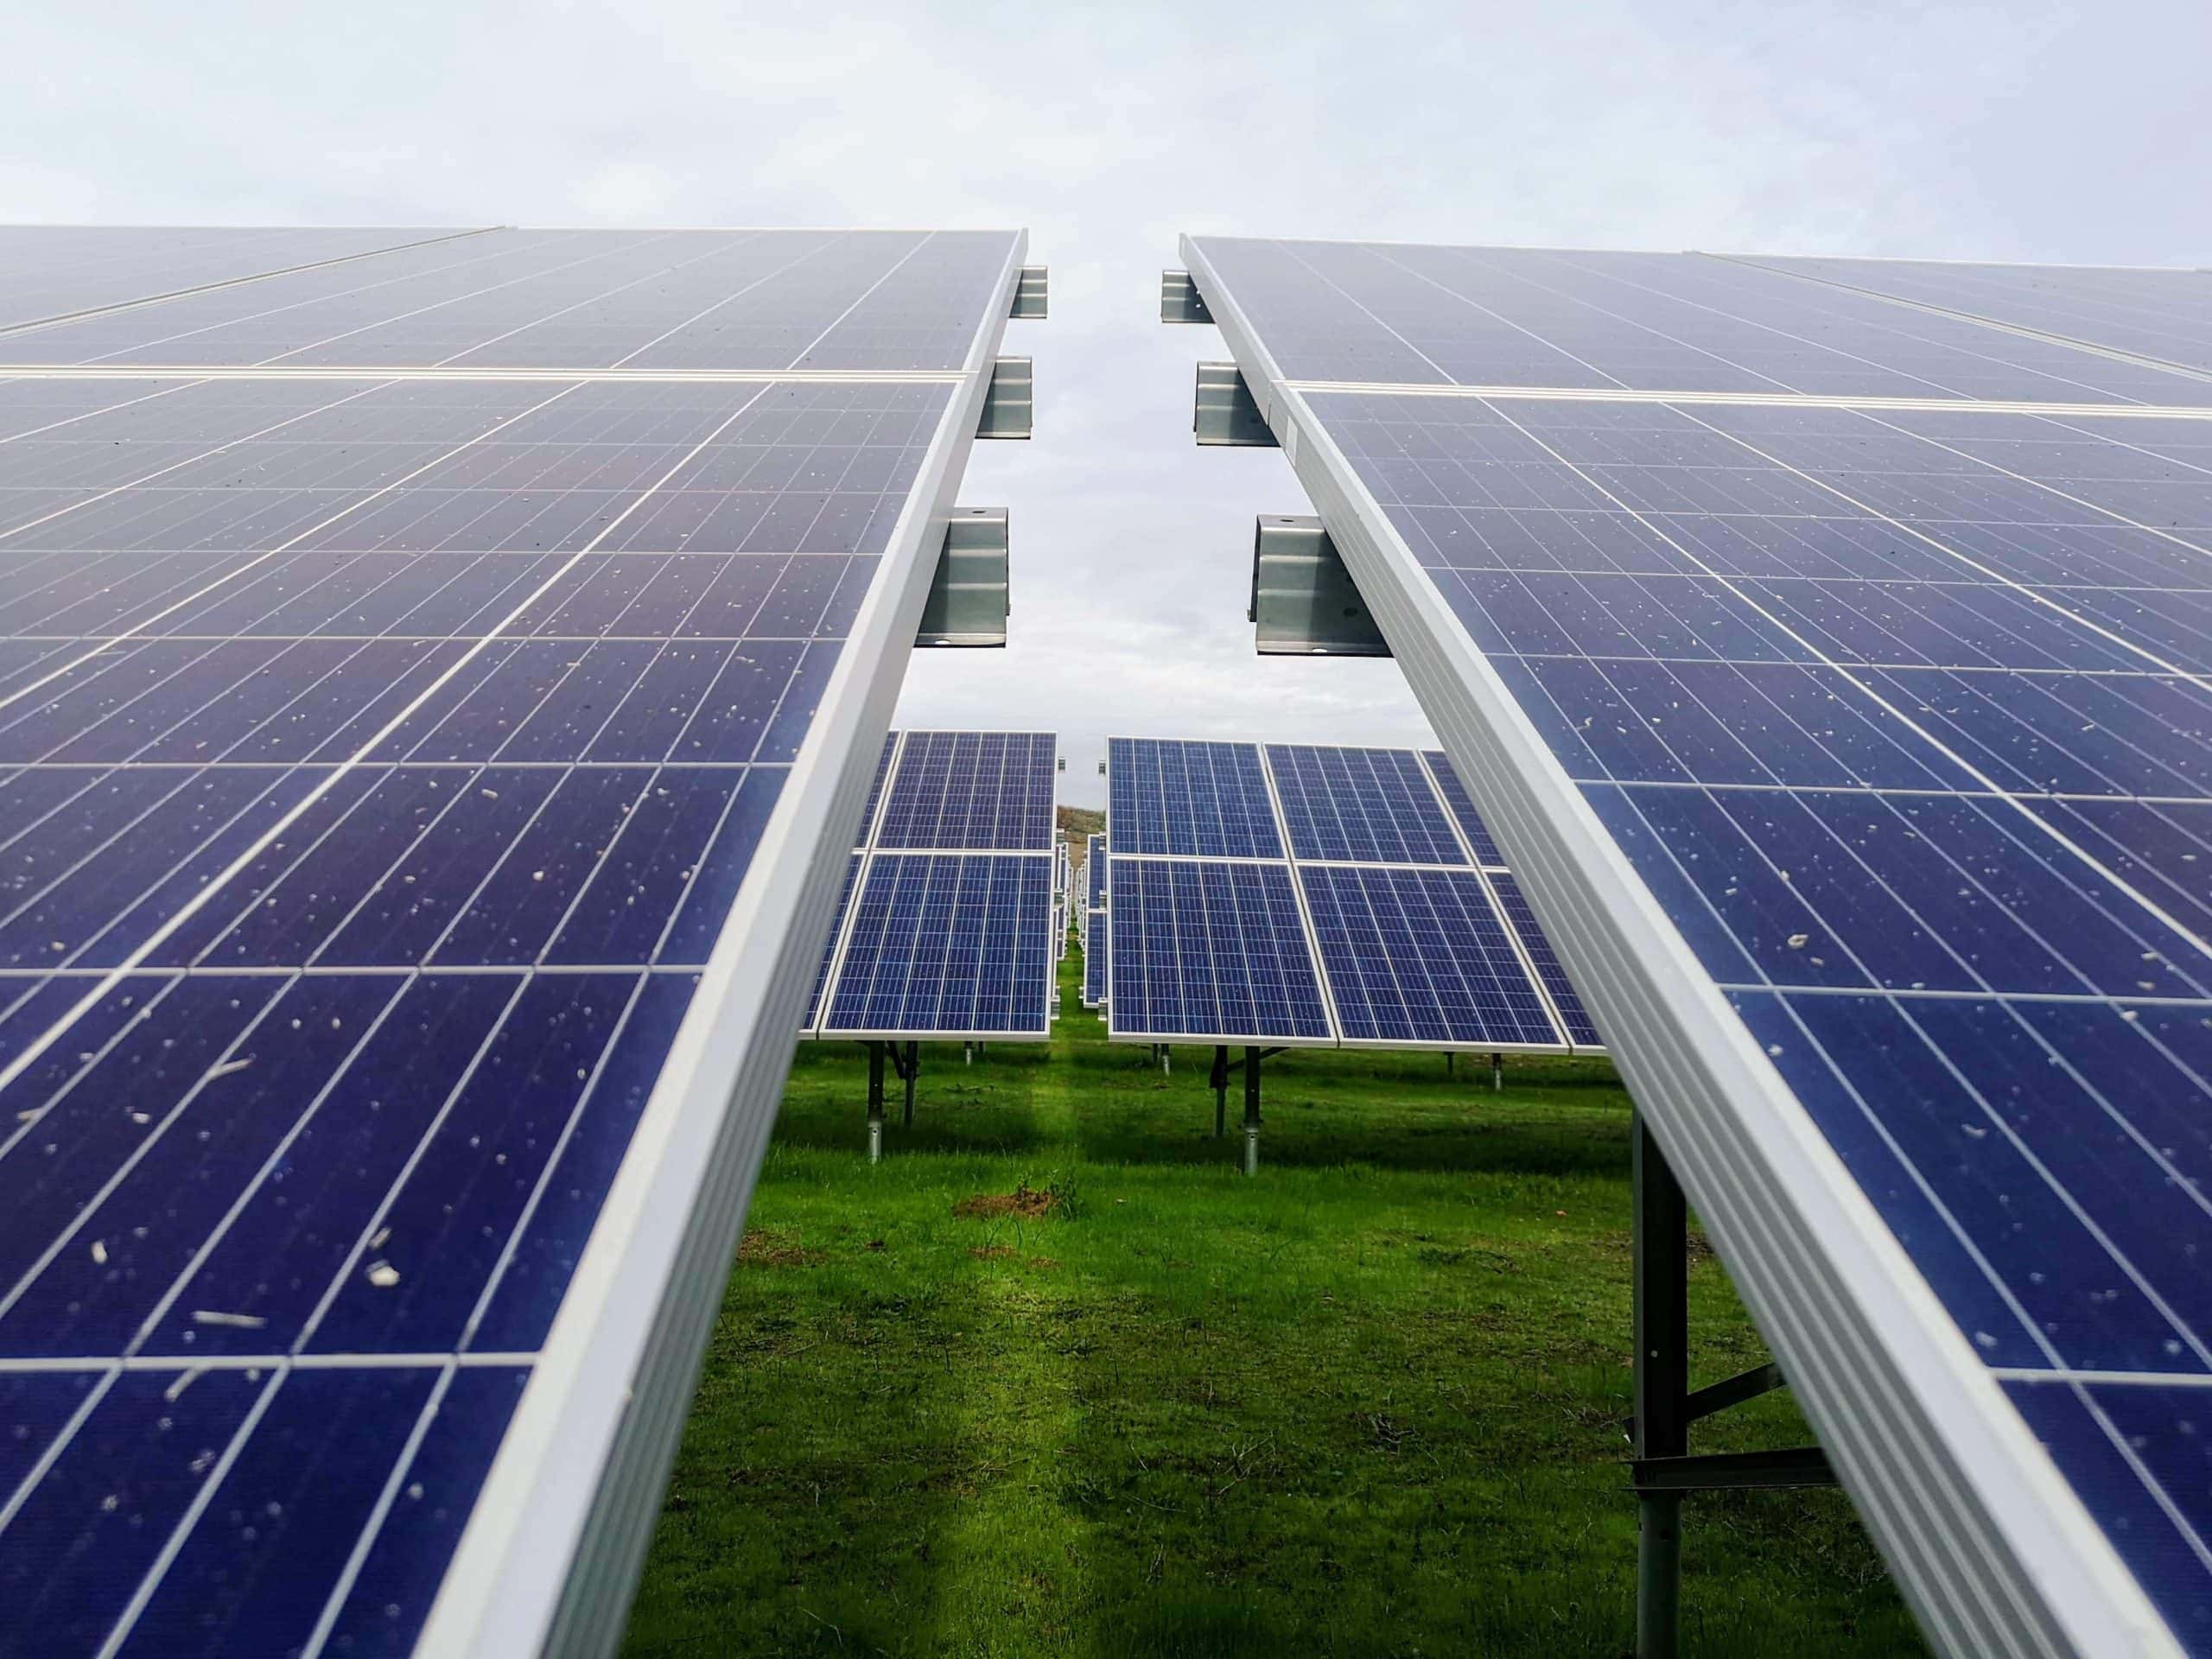 Placas solares fotovoltaicas: Todo sobre su instalación en tu finca rústica